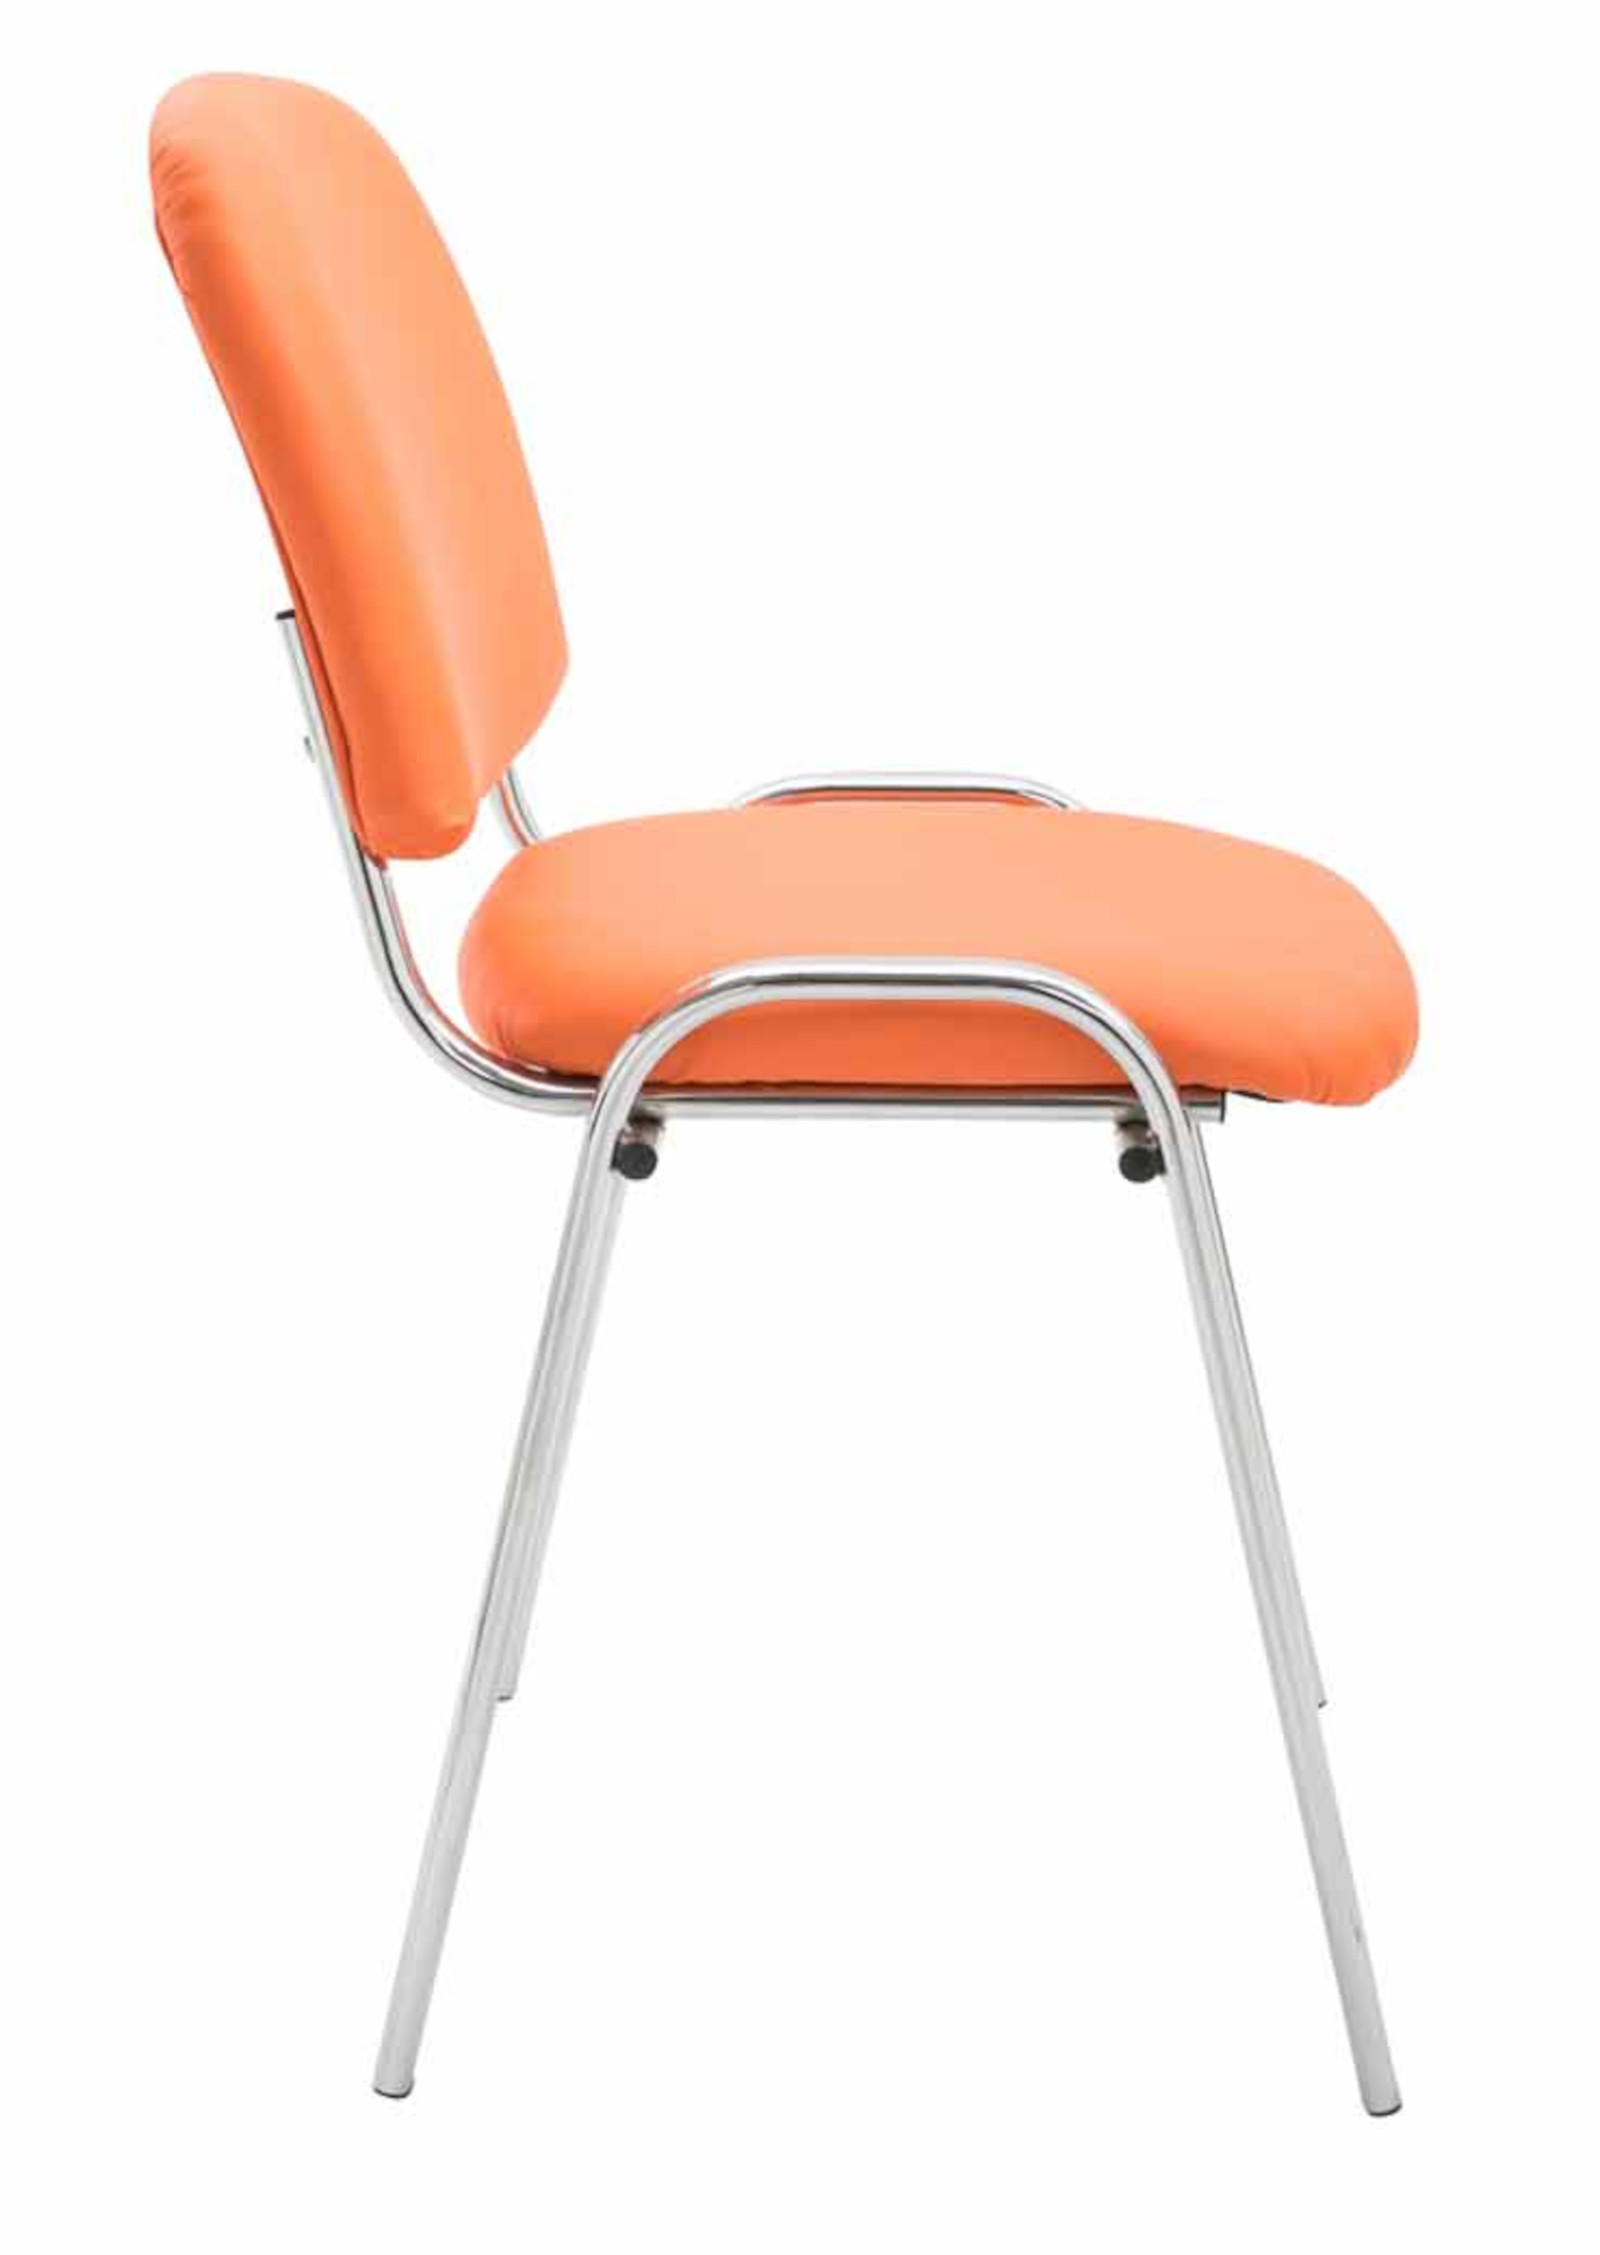 4er Set Stühle Ken Chrom Kunstleder orange